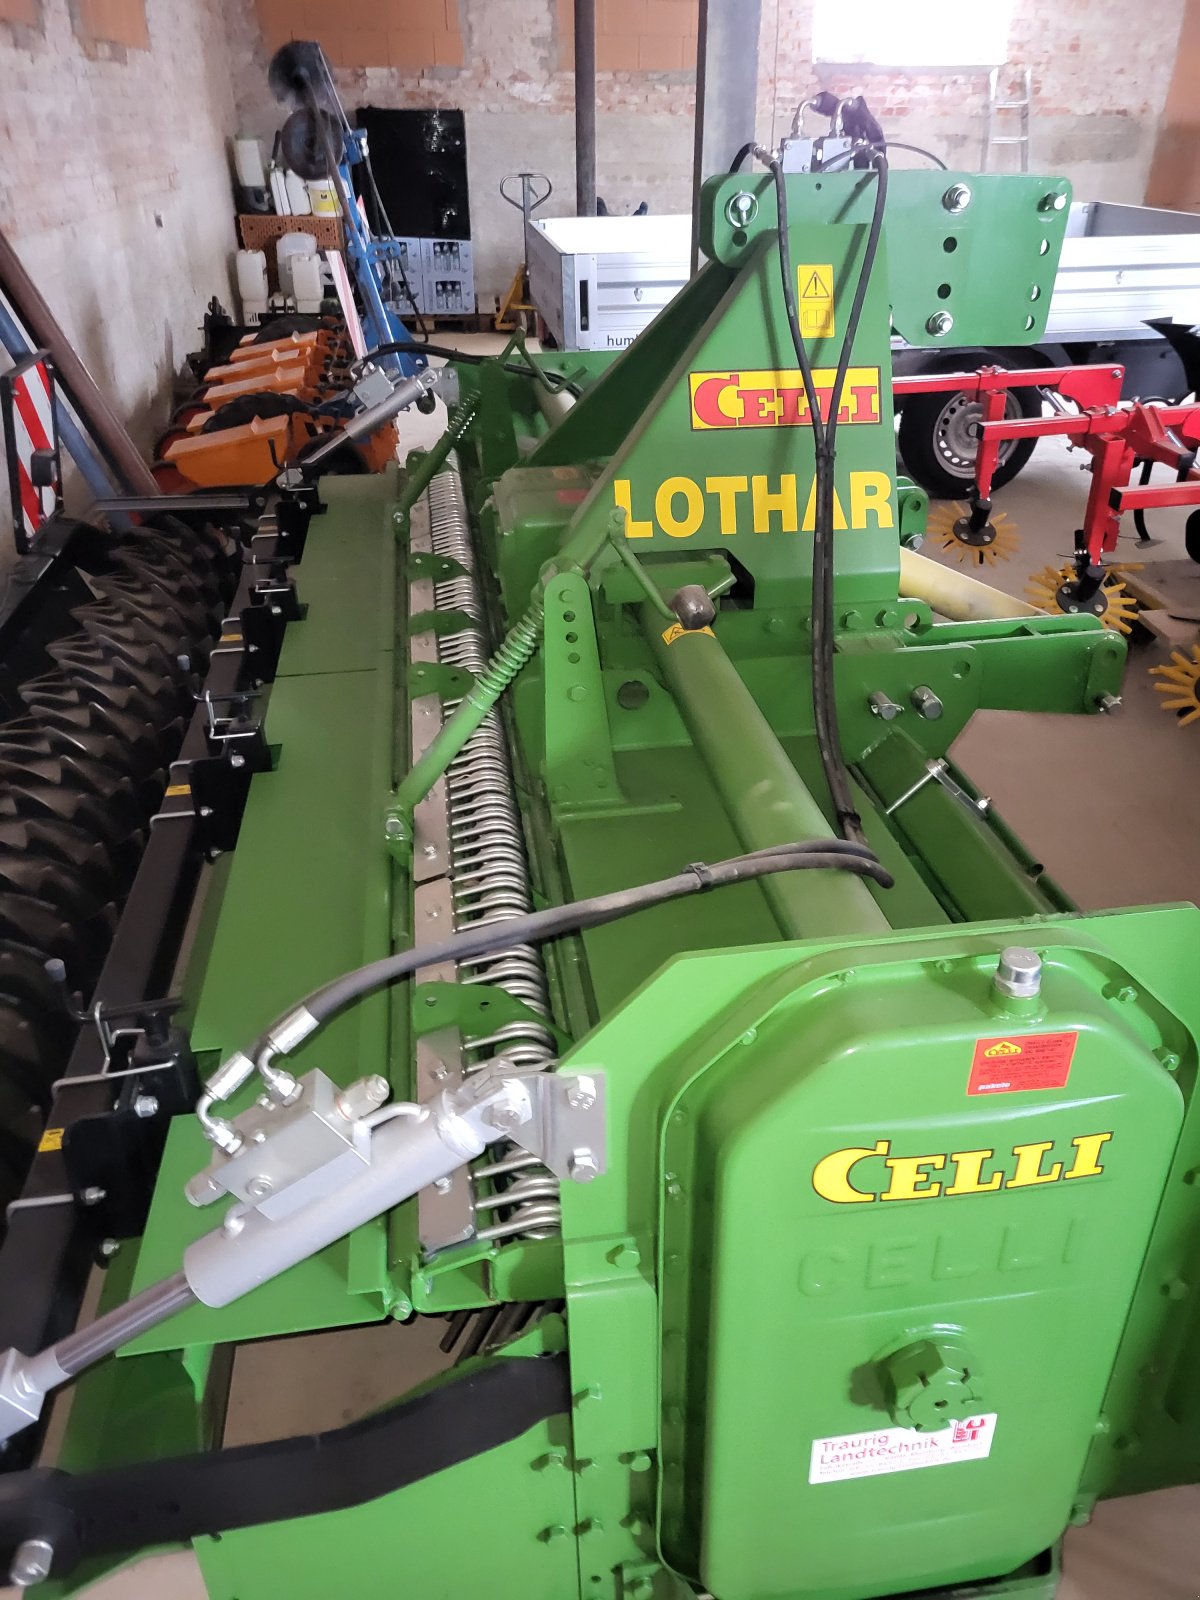 Fräse des Typs Celli Lothar 305, Gebrauchtmaschine in Merching (Bild 1)